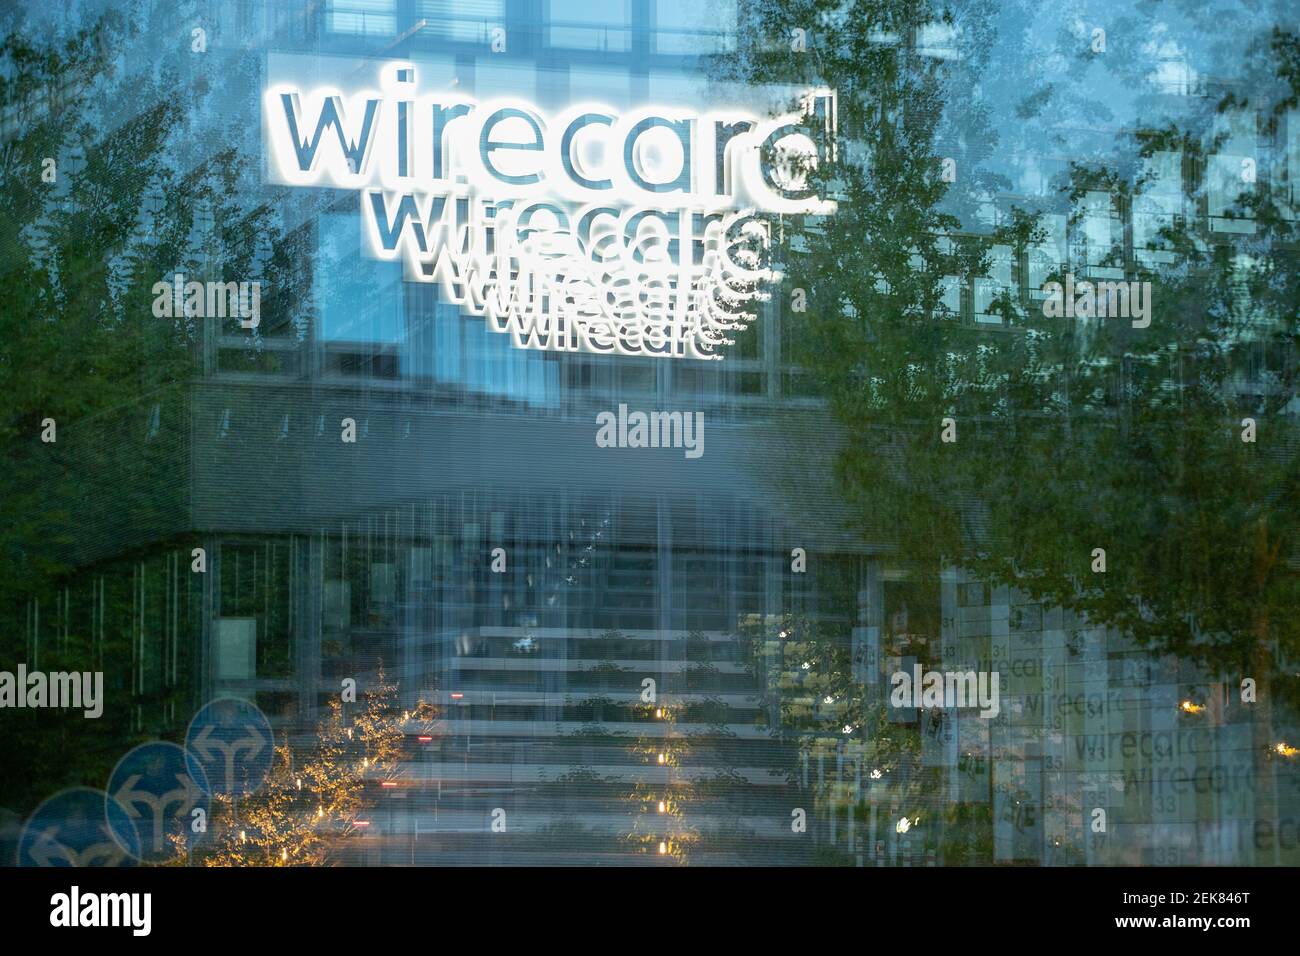 Betrichtung der Wirecard Zentrale. Logo DAS der WIrecard leuchtet. Blick auf  die Zentrale des insolventen Dax Unternehmens Wirecard. Nachdem die  Wirtschaftsprüfer Ernst & Young ( EY ) das Testat verweigert hatten und